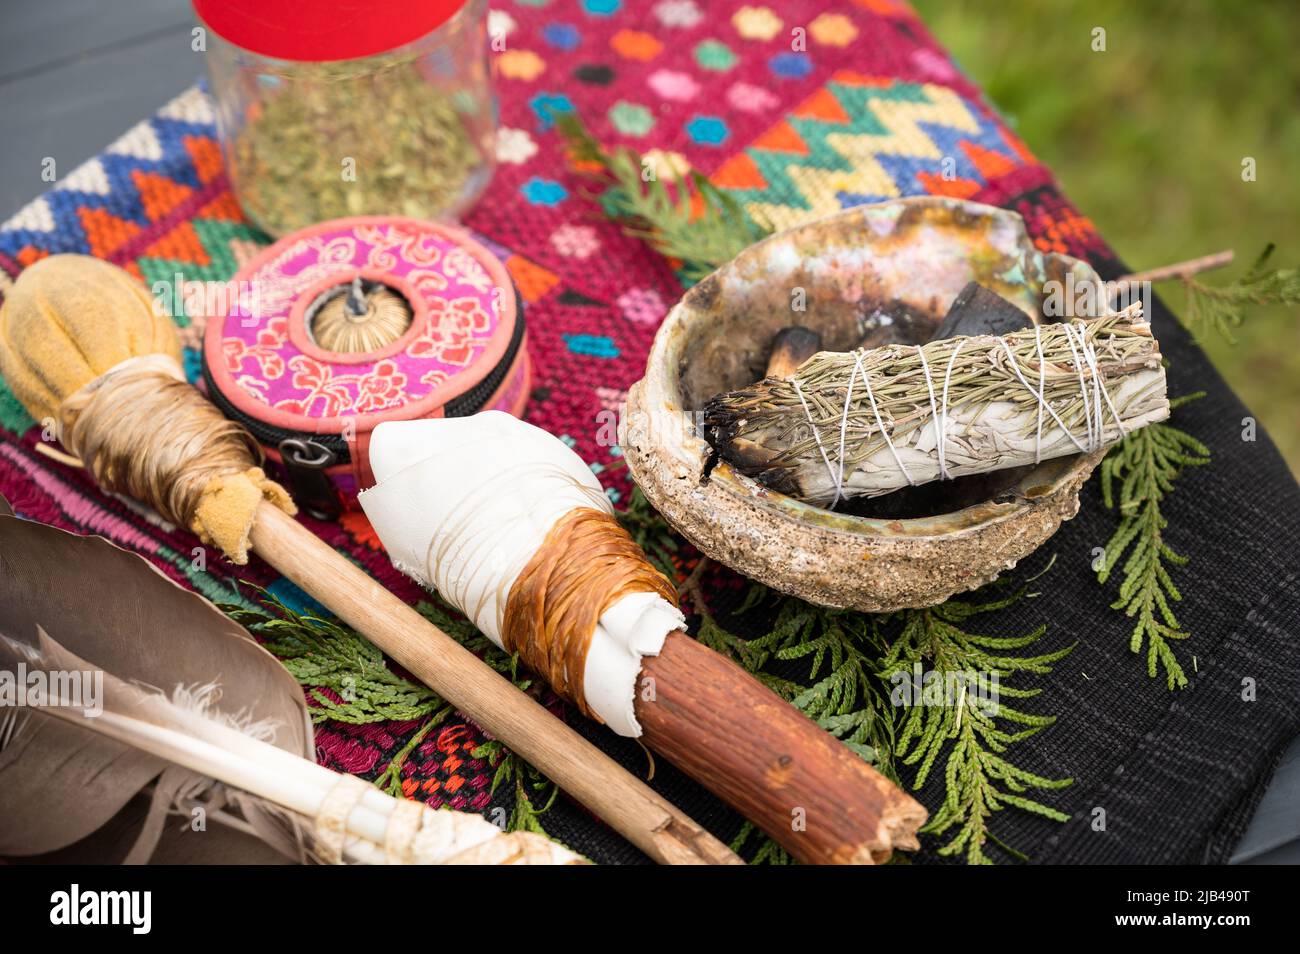 Un fascio di salvia e una piuma d'aquila sono disposti in preparazione di una cerimonia di sbavatura degli indiani, indiani o indigeni. Pemberton BC, Canada Foto Stock